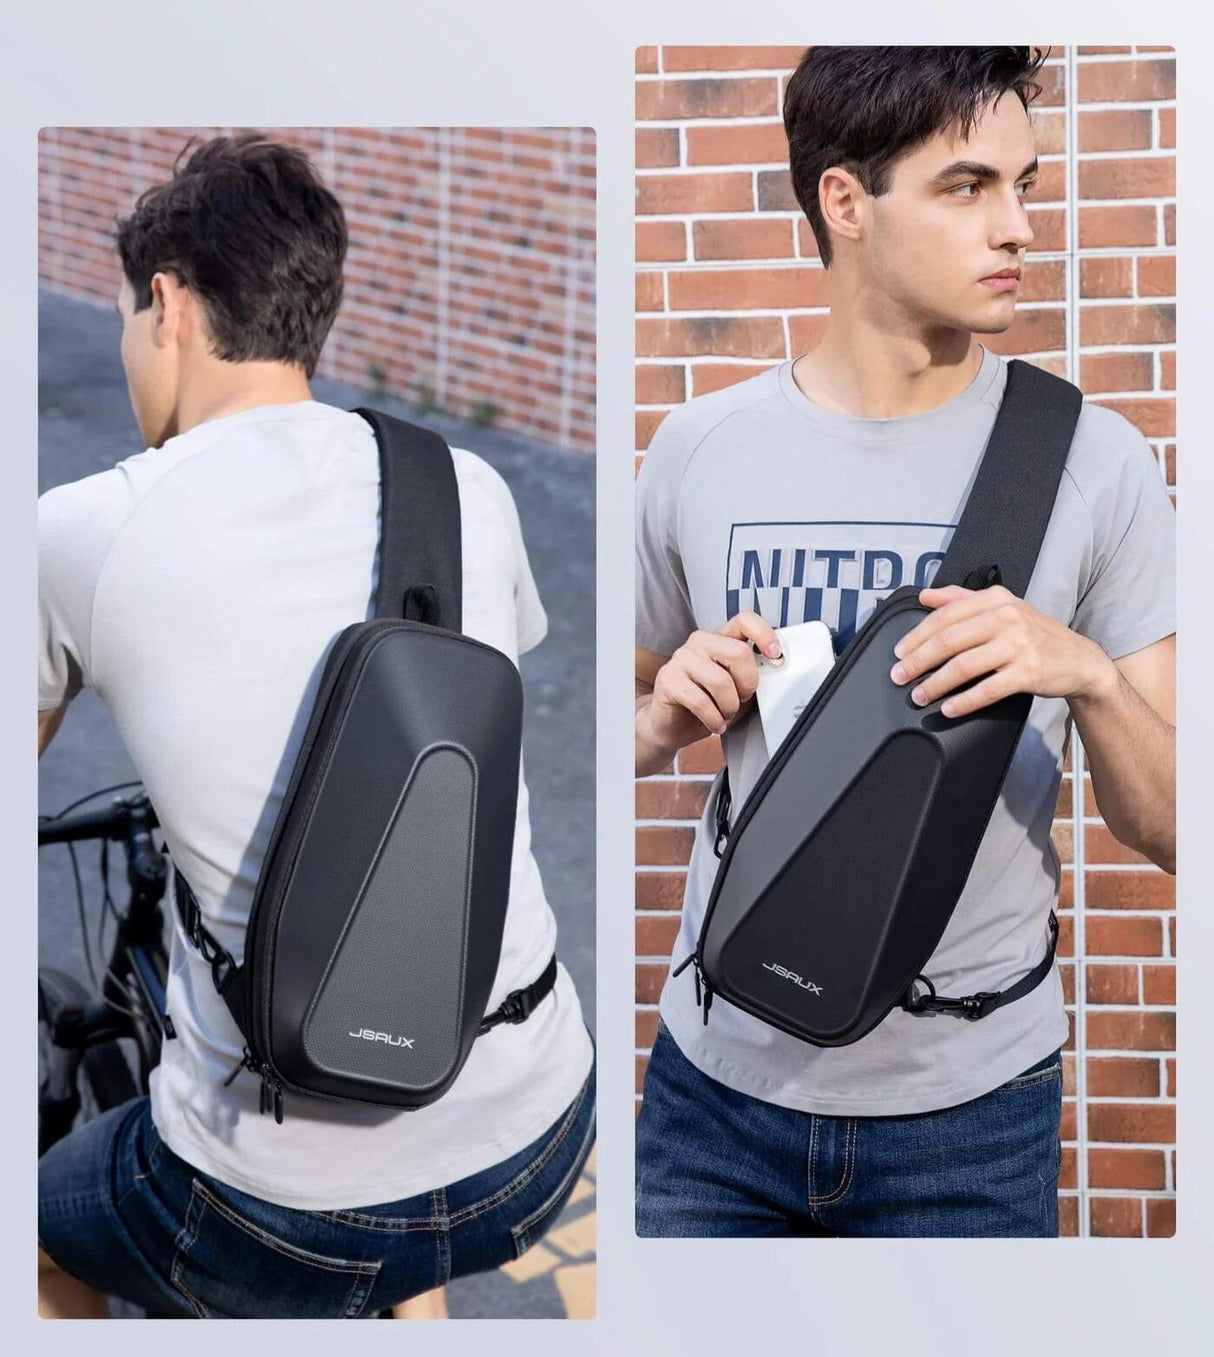 JSAUX Schulter Tasche - Transport Tasche für Handheld Konsolen - Steam Deck, ROG Ally, Nintendo Switch - decky.net